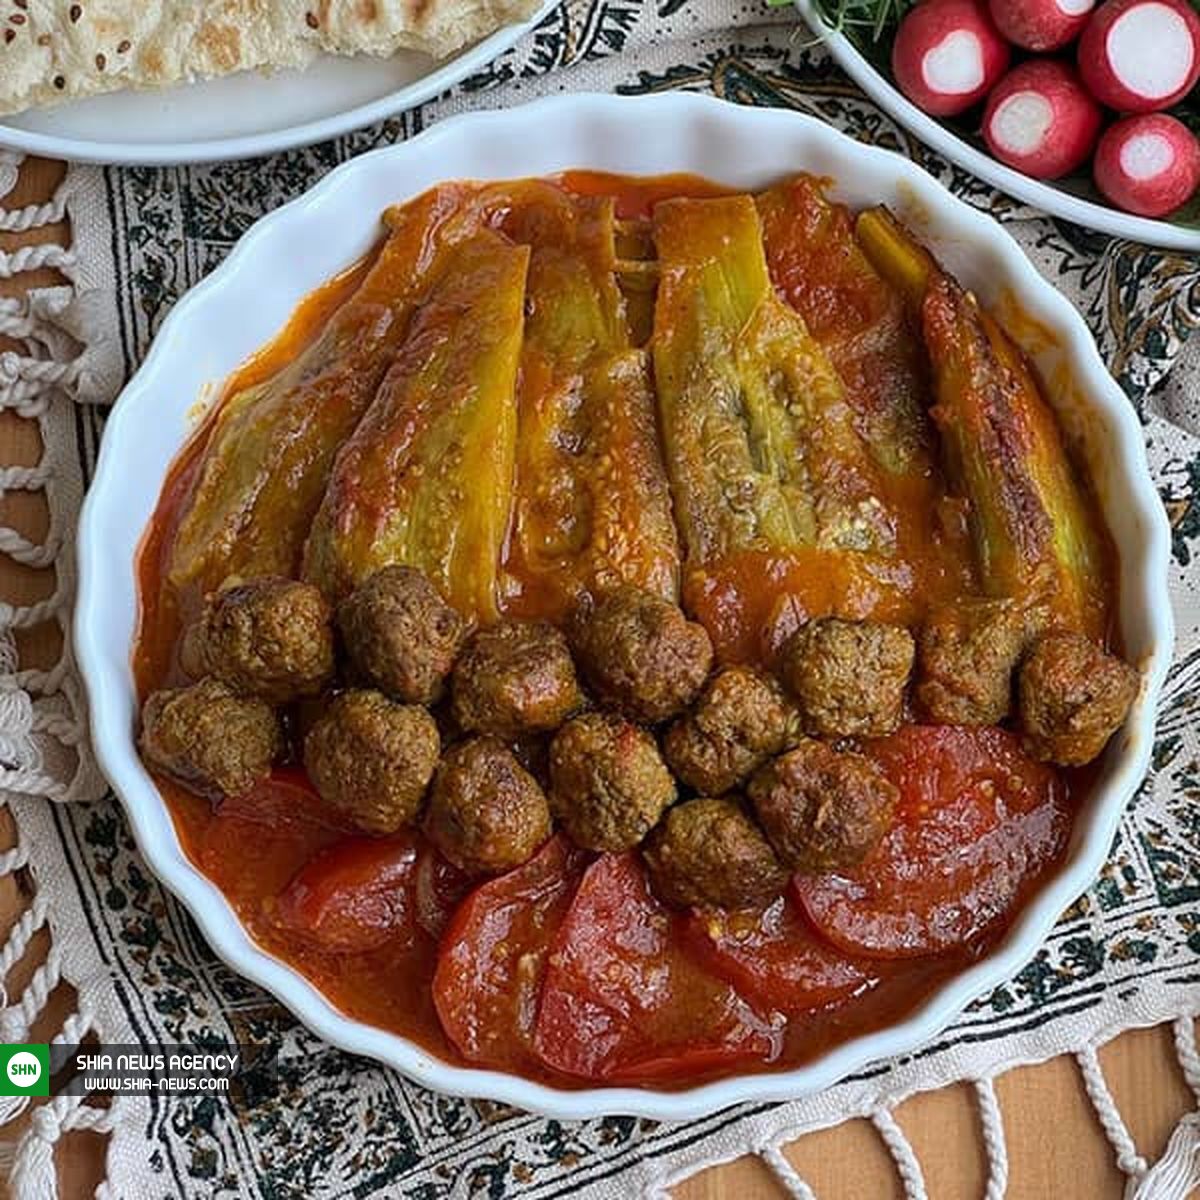 مشته بادمجان یک غذای خوشمزه و اصیل ایرانی